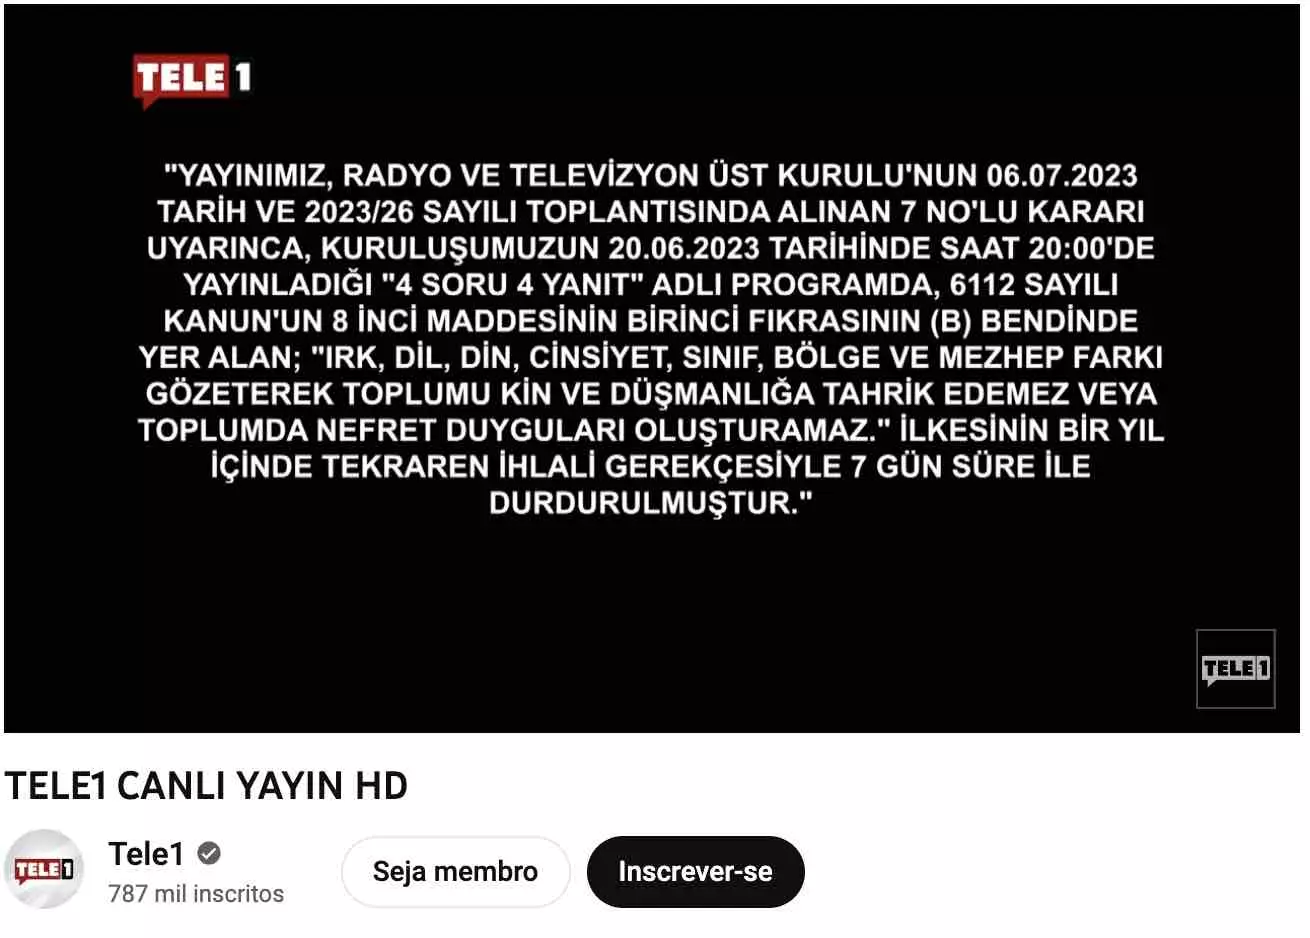 TV da Turquia tem sinal interrompido por críticas ao governo Erdogan